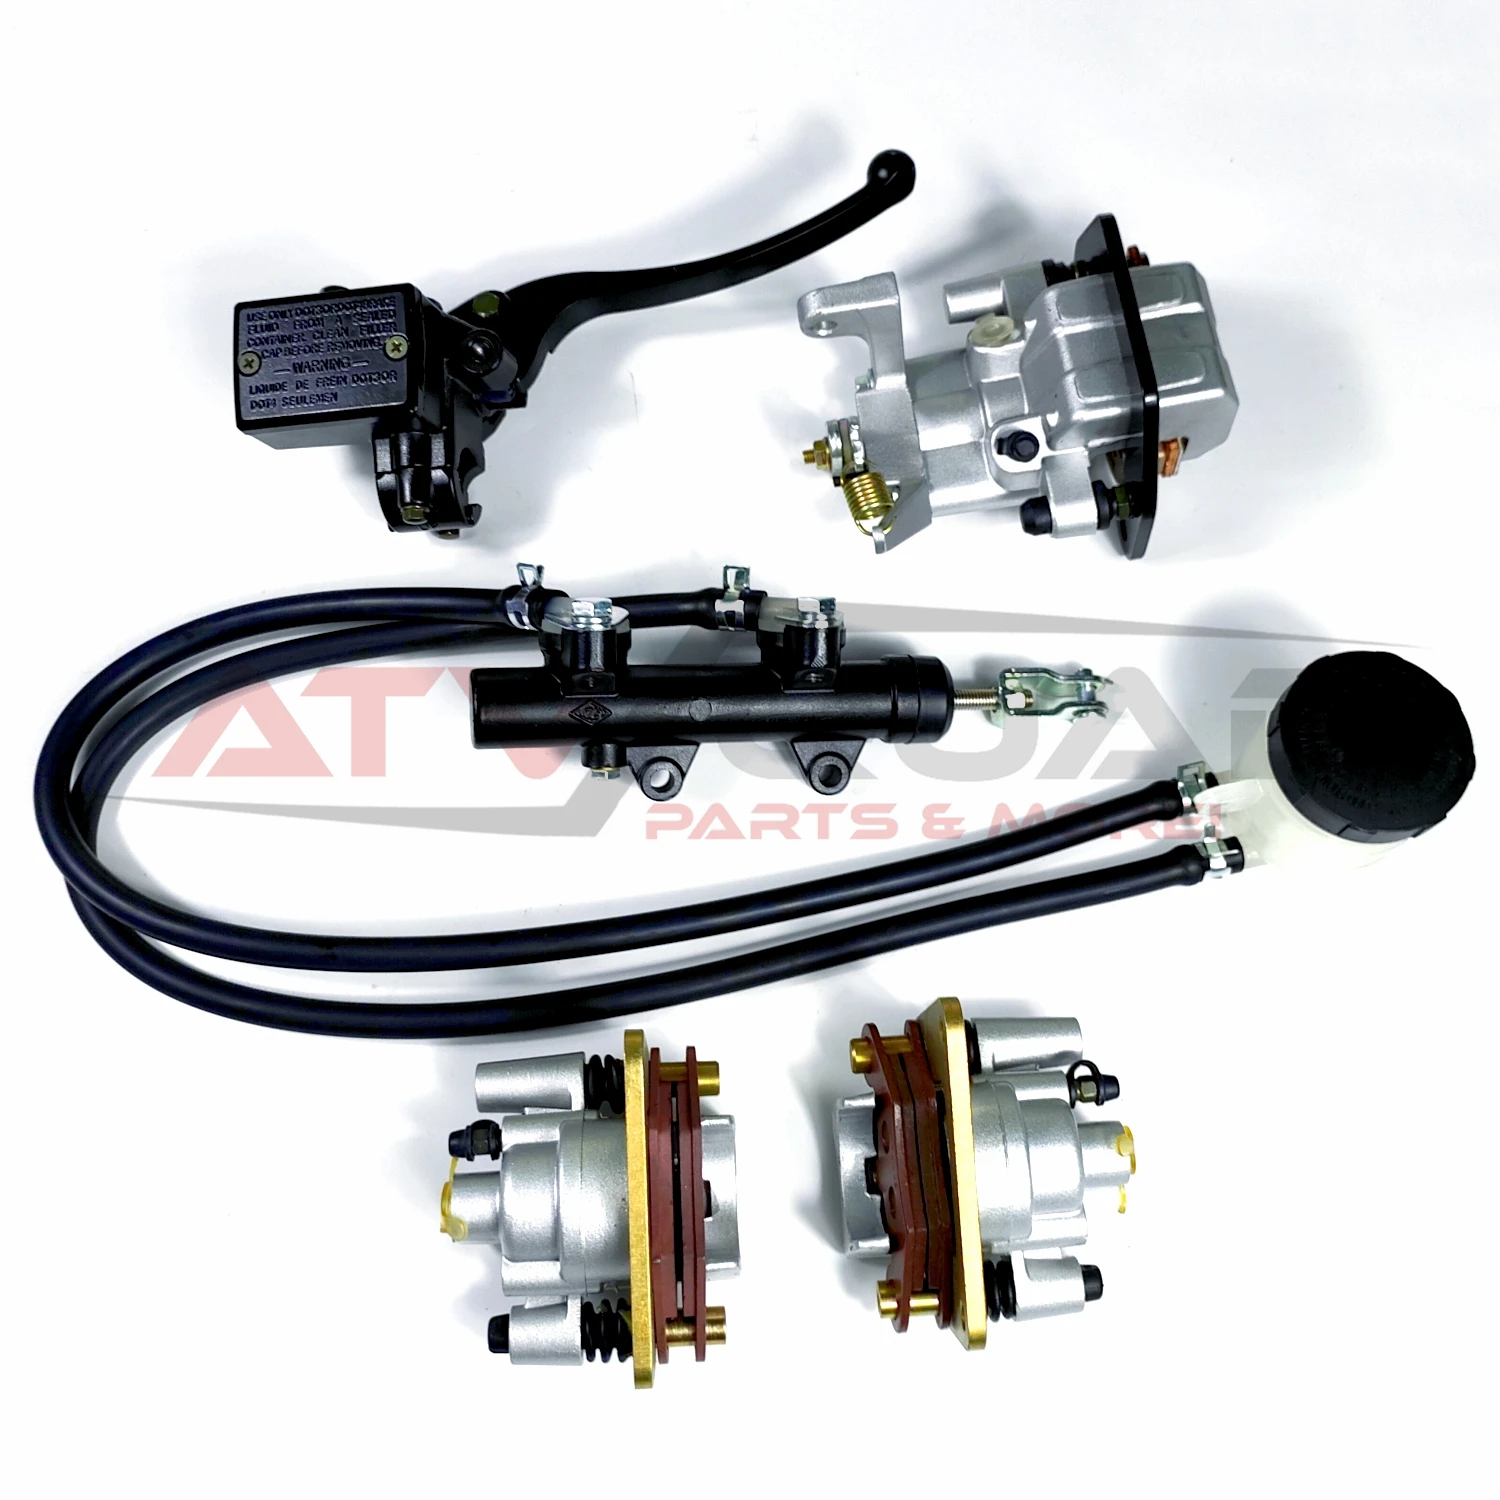 Brake Master Cylinder Caliper Kit for CFmoto 550 X5H.O. 2014-2016 9CR6-081100 9010-080600 9010-080800 9010-080700 9CR6-081200